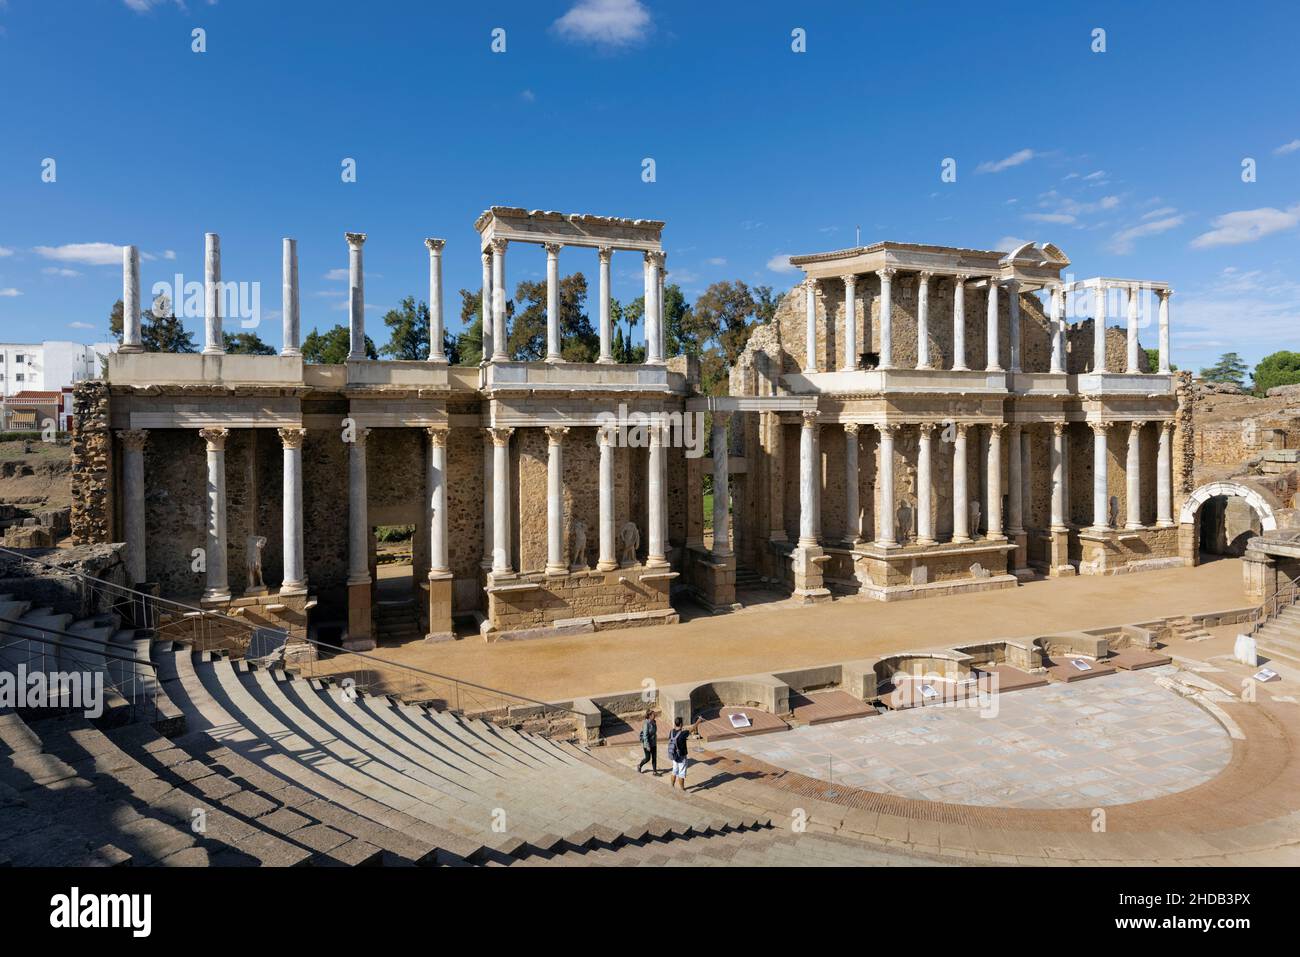 Das römische Theater, Merida, Provinz Badajoz, Extremadura, Spanien. Das Theater wurde ursprünglich in den Jahren 16 bis 15 v. Chr. erbaut. Das Archäologische Ensem Stockfoto